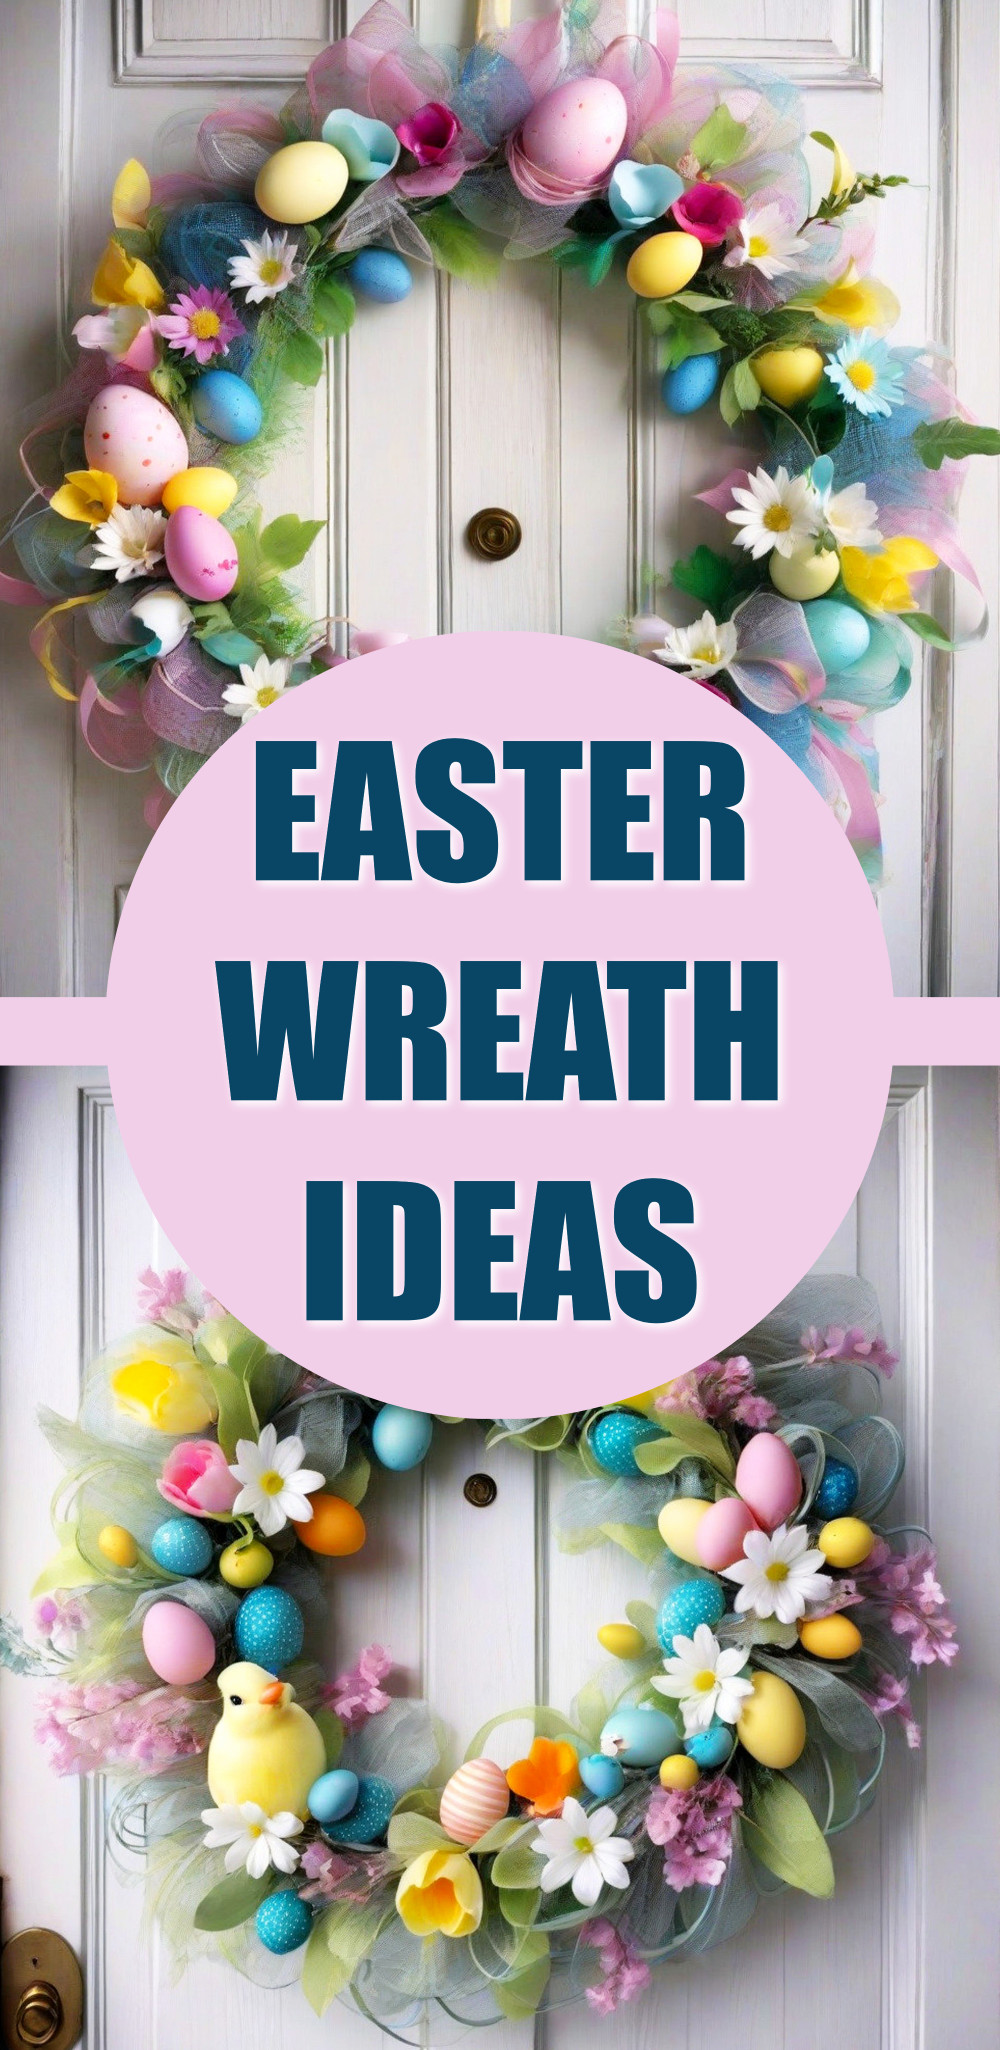 DIY Easter Wreath Ideas For Front Door